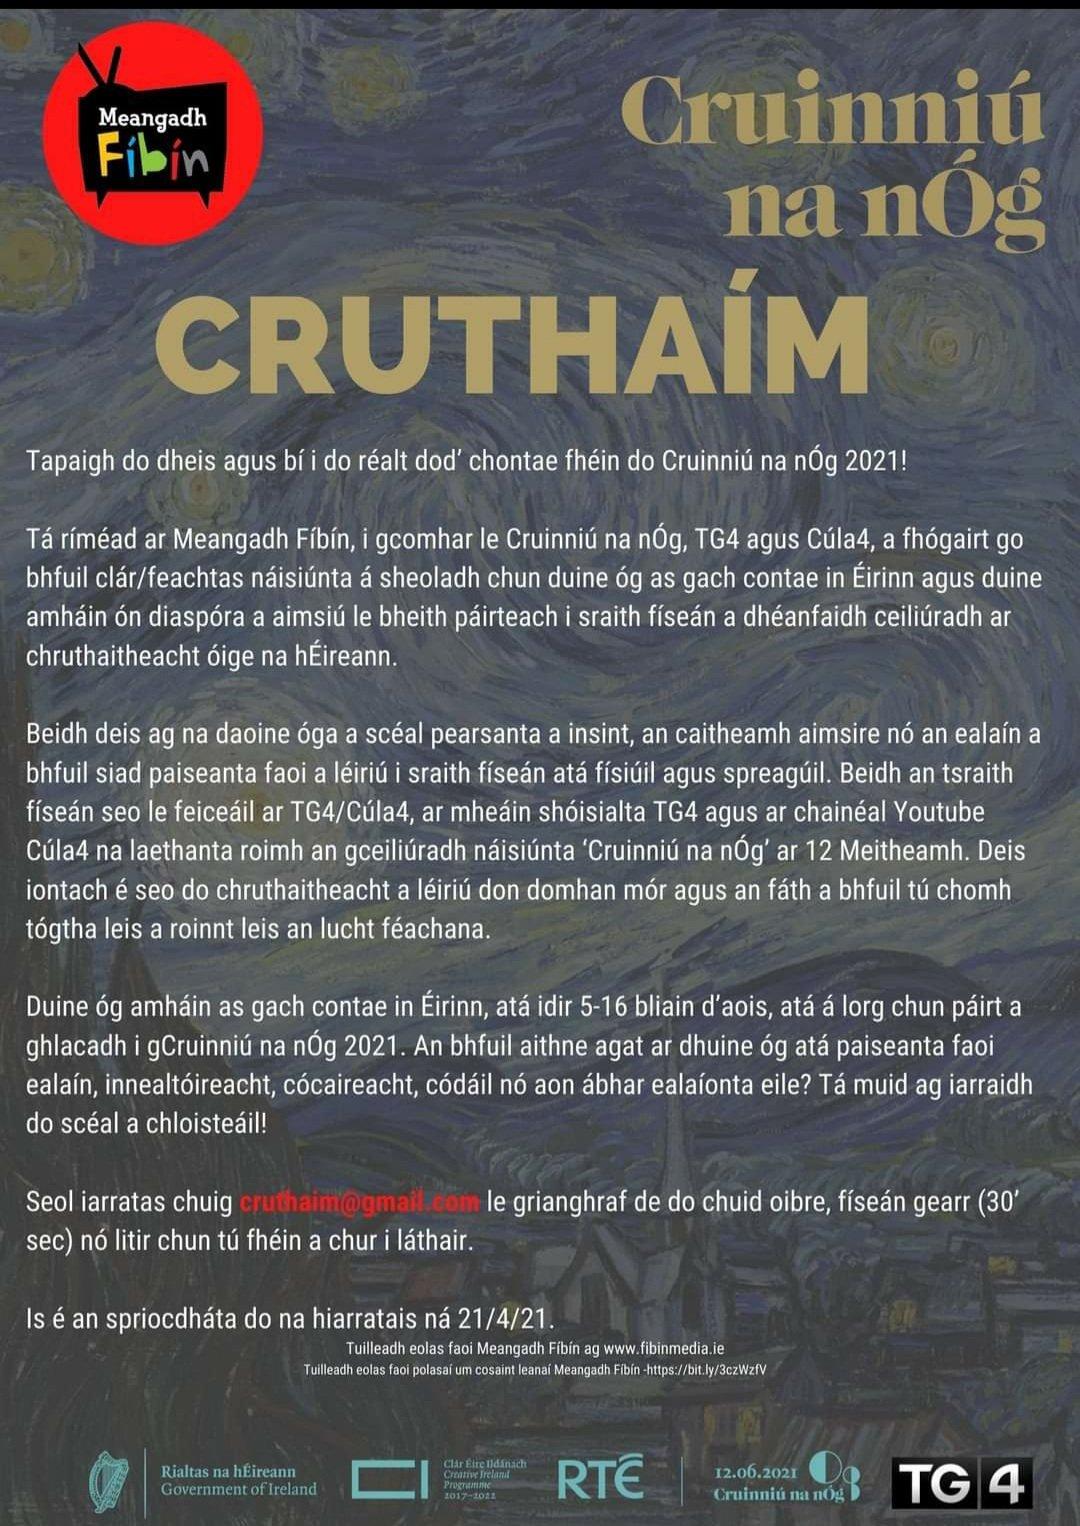 Cruthaim